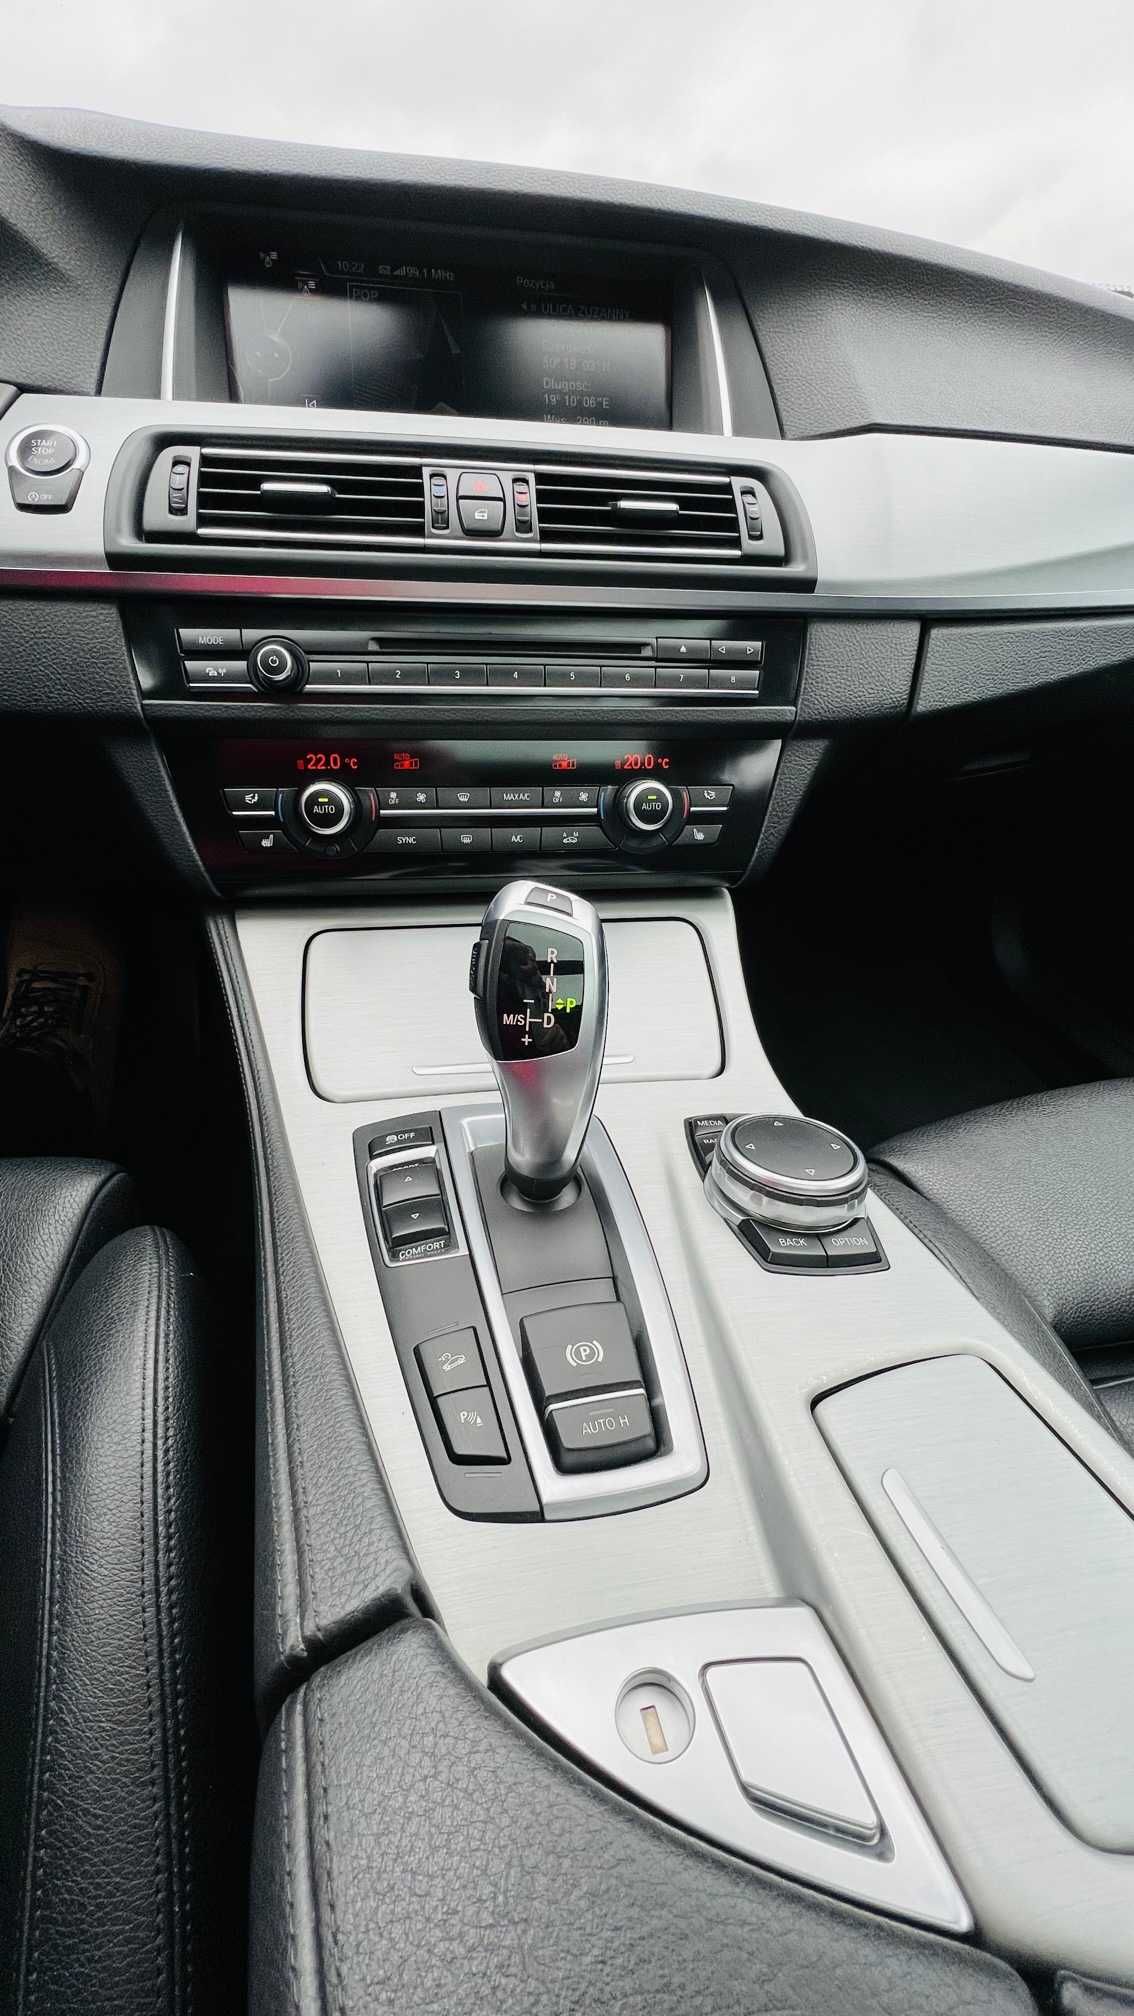 BMW 520d xDrive, Panorama, Hak elektryczny, Skóra